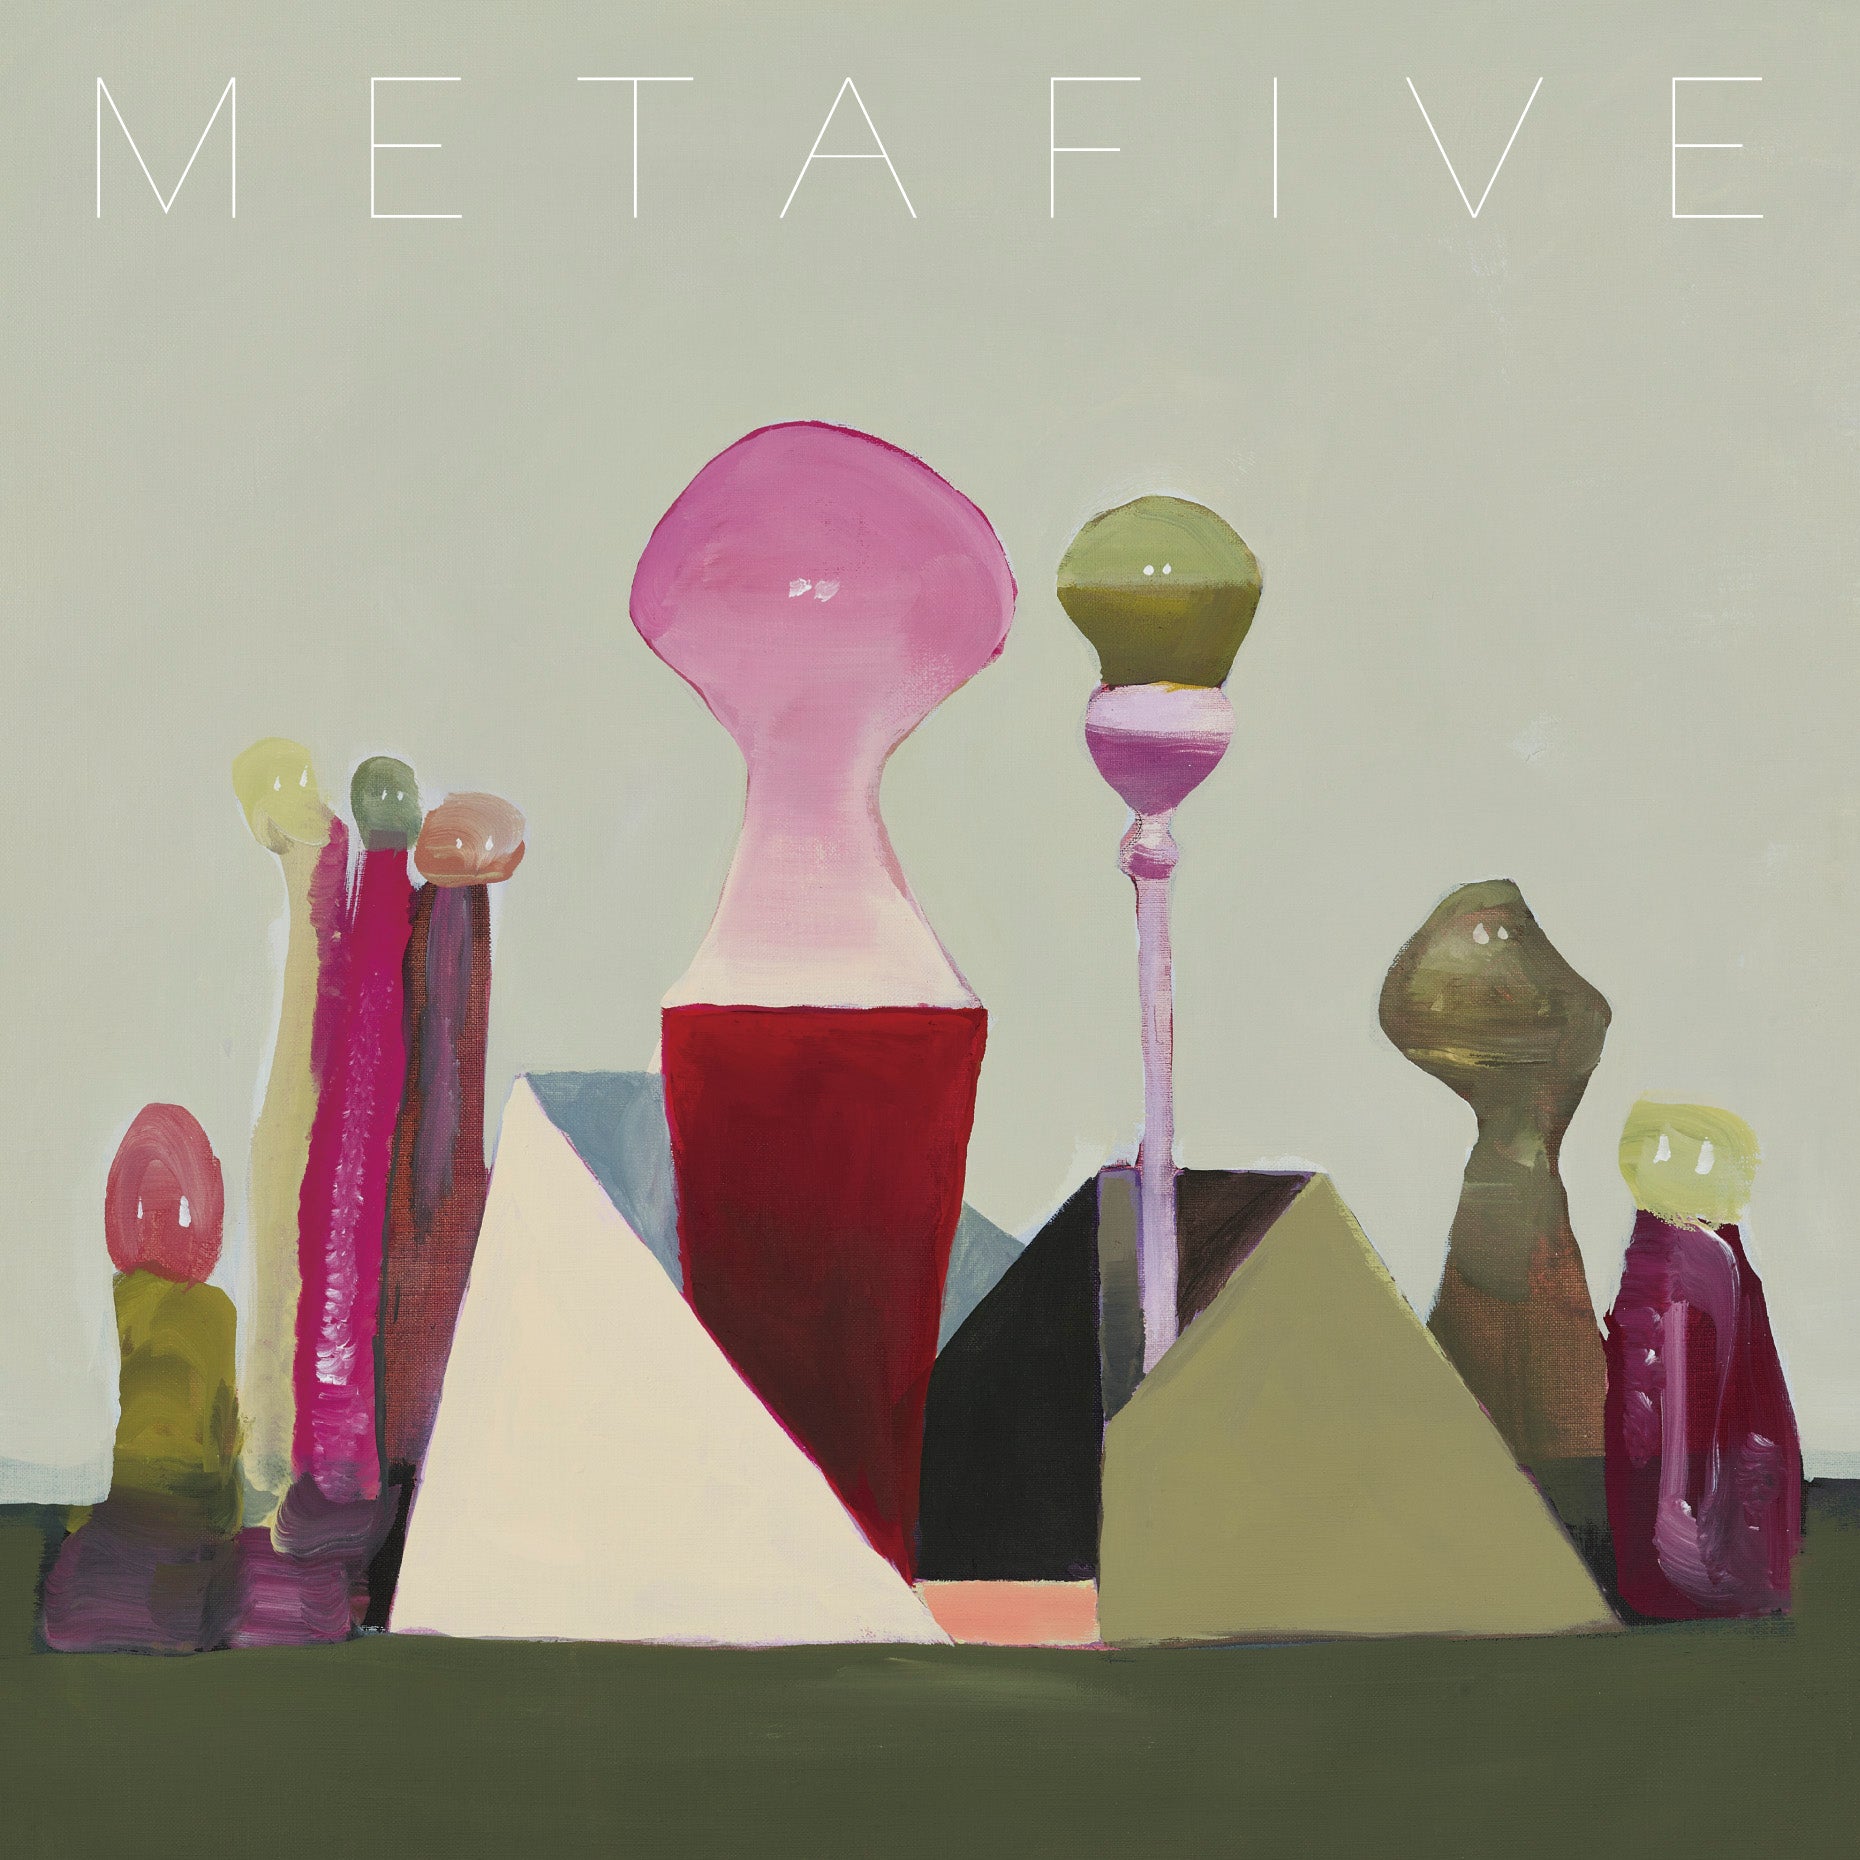 METAATEM (Deluxe Edition)